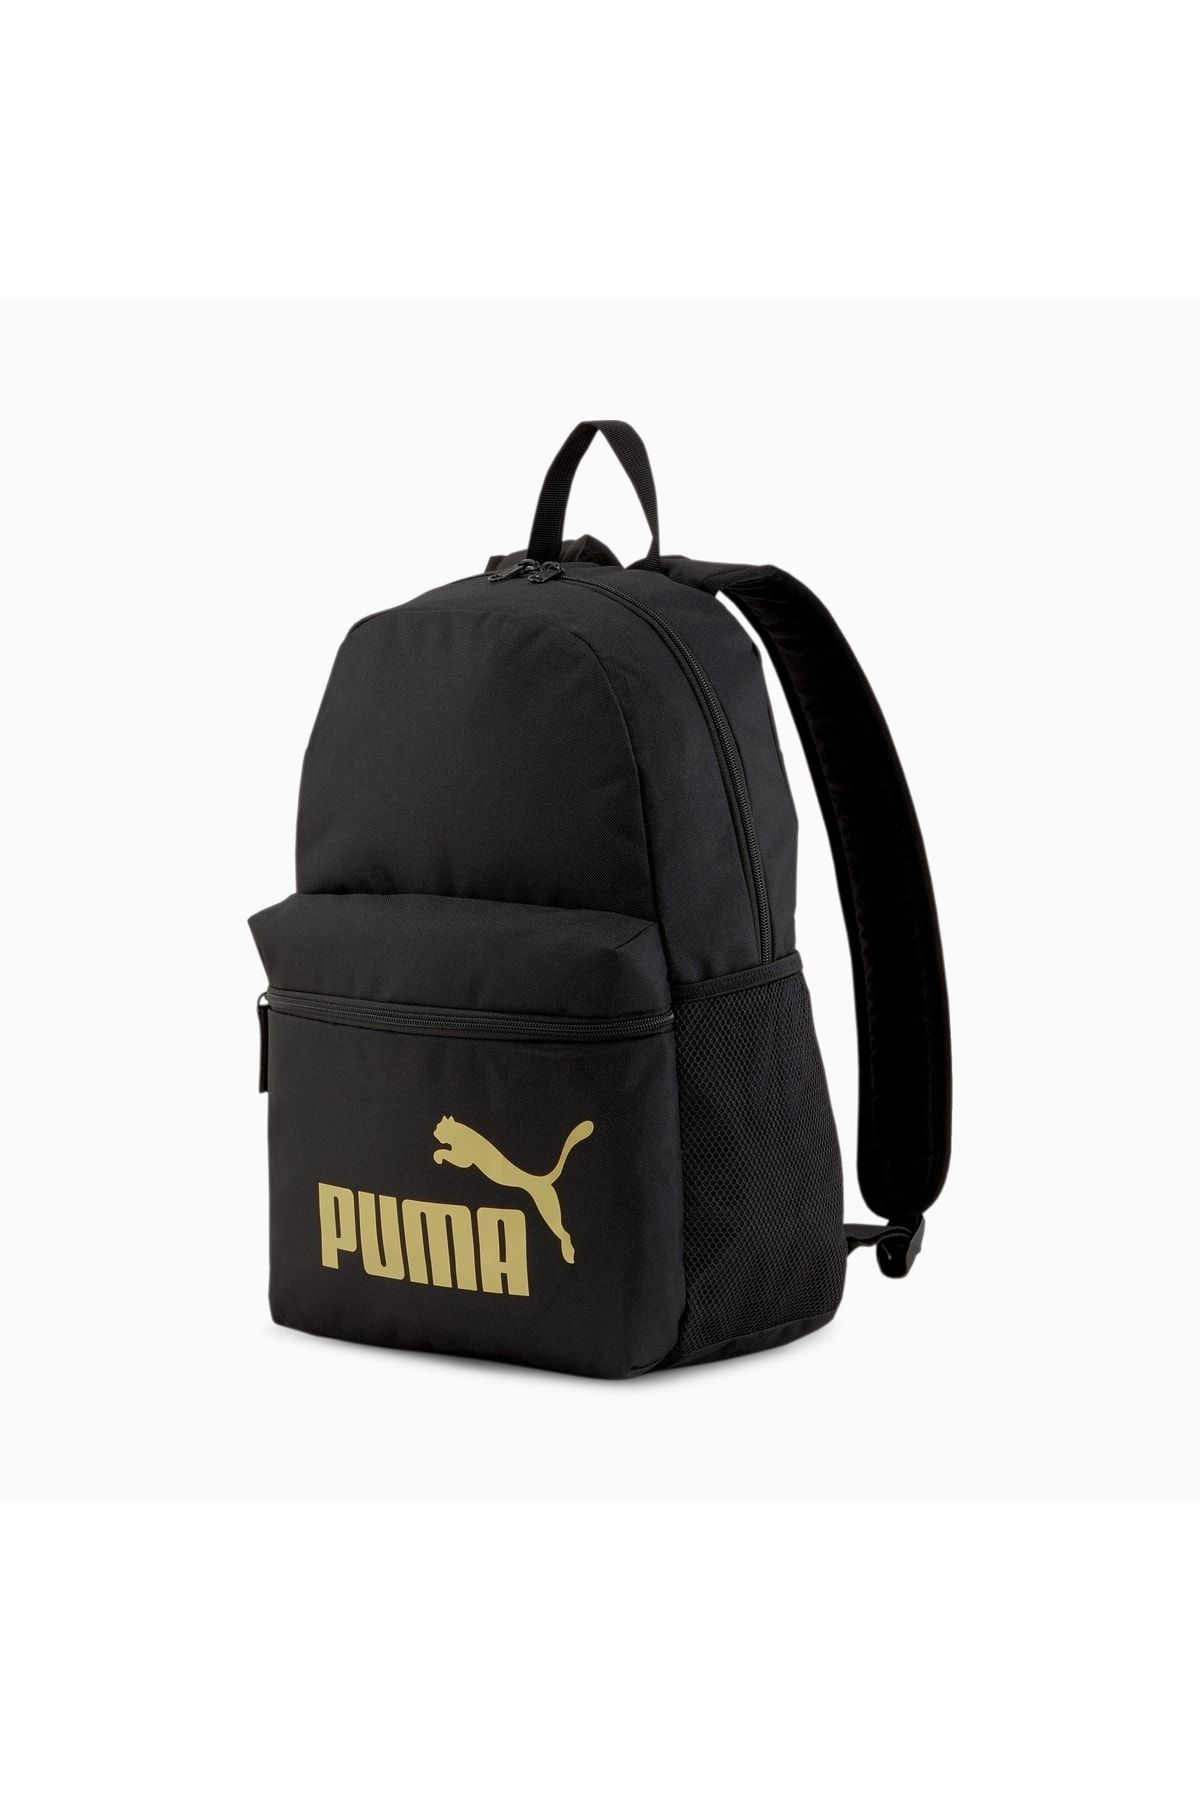 Mochila Puma Phase Small Backpack Negro Unisex